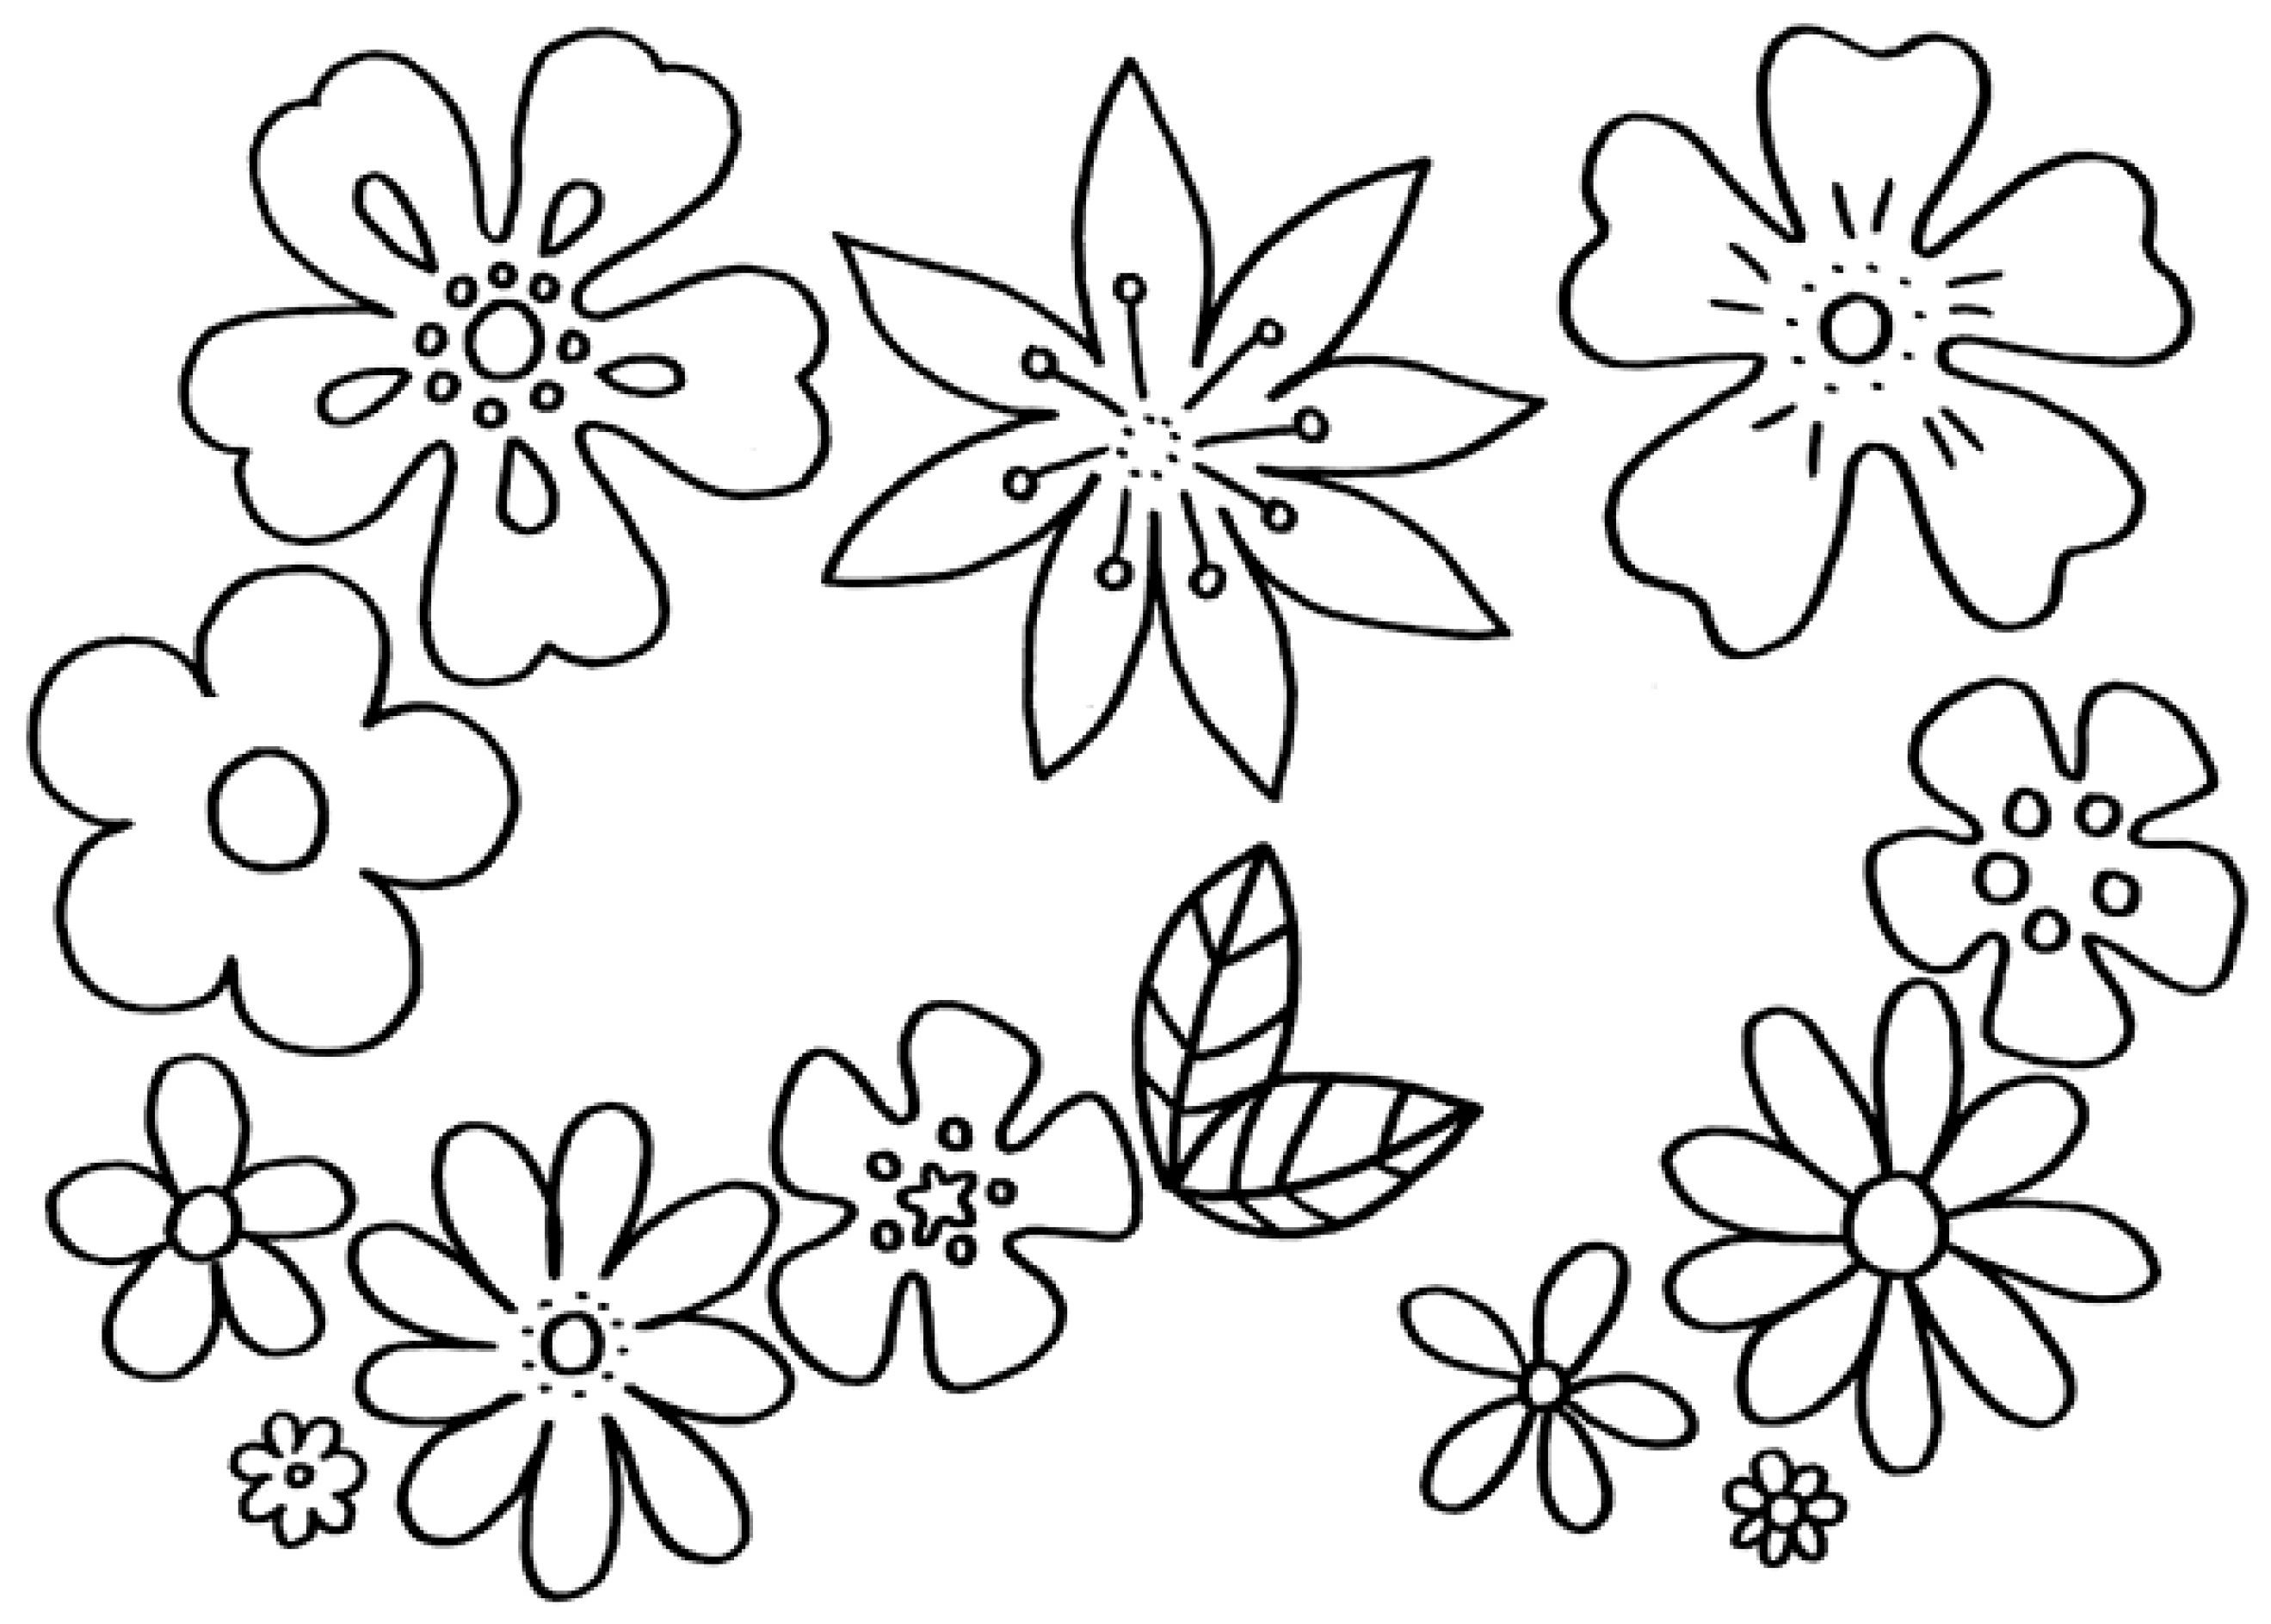 Malvorlagen Blume
 Malvorlagen Blumen kostenlose Ausmalbilder